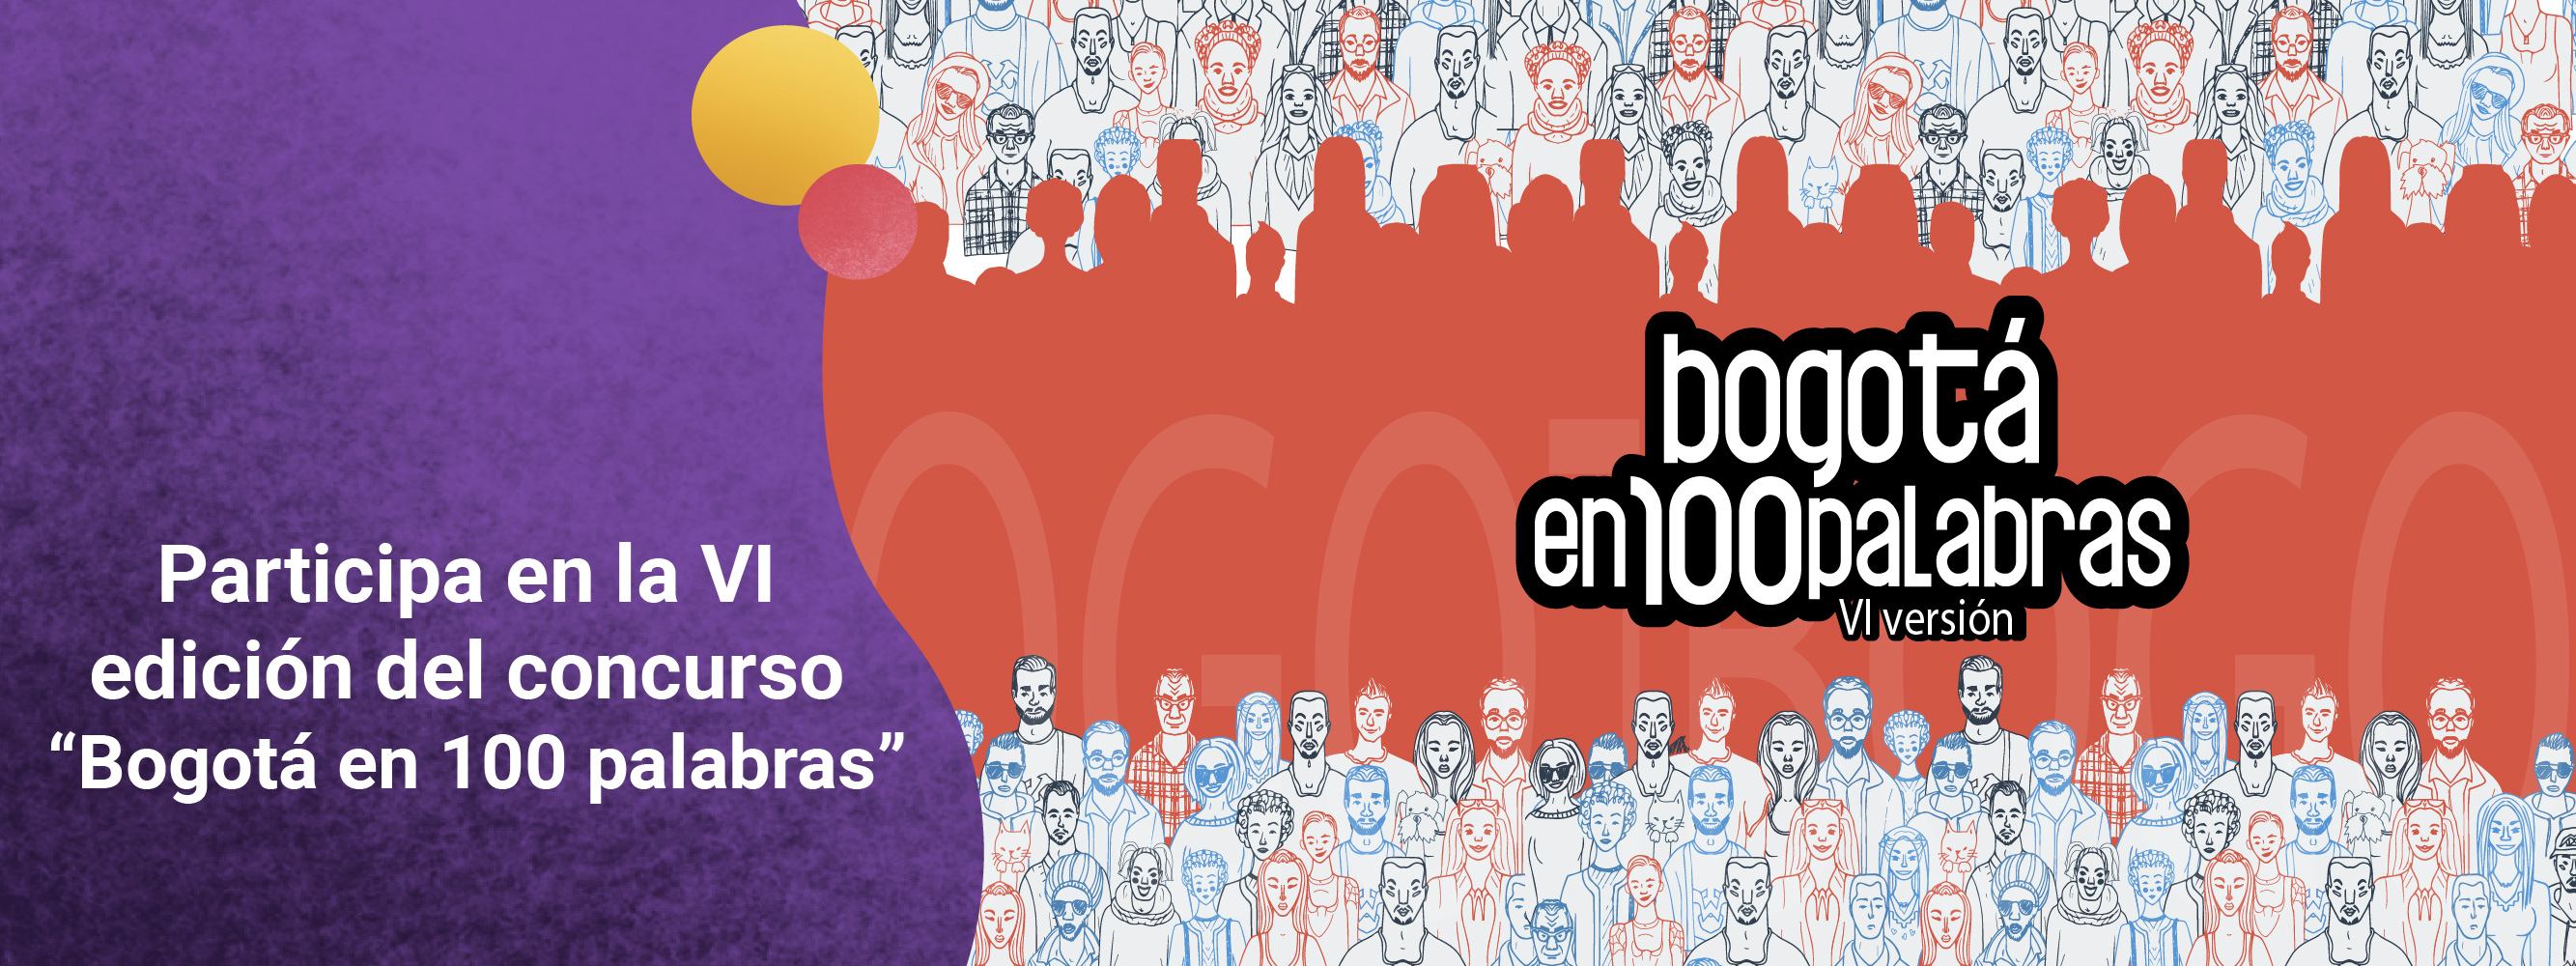 Participa en la VI edición del concurso “Bogotá en 100 palabras”